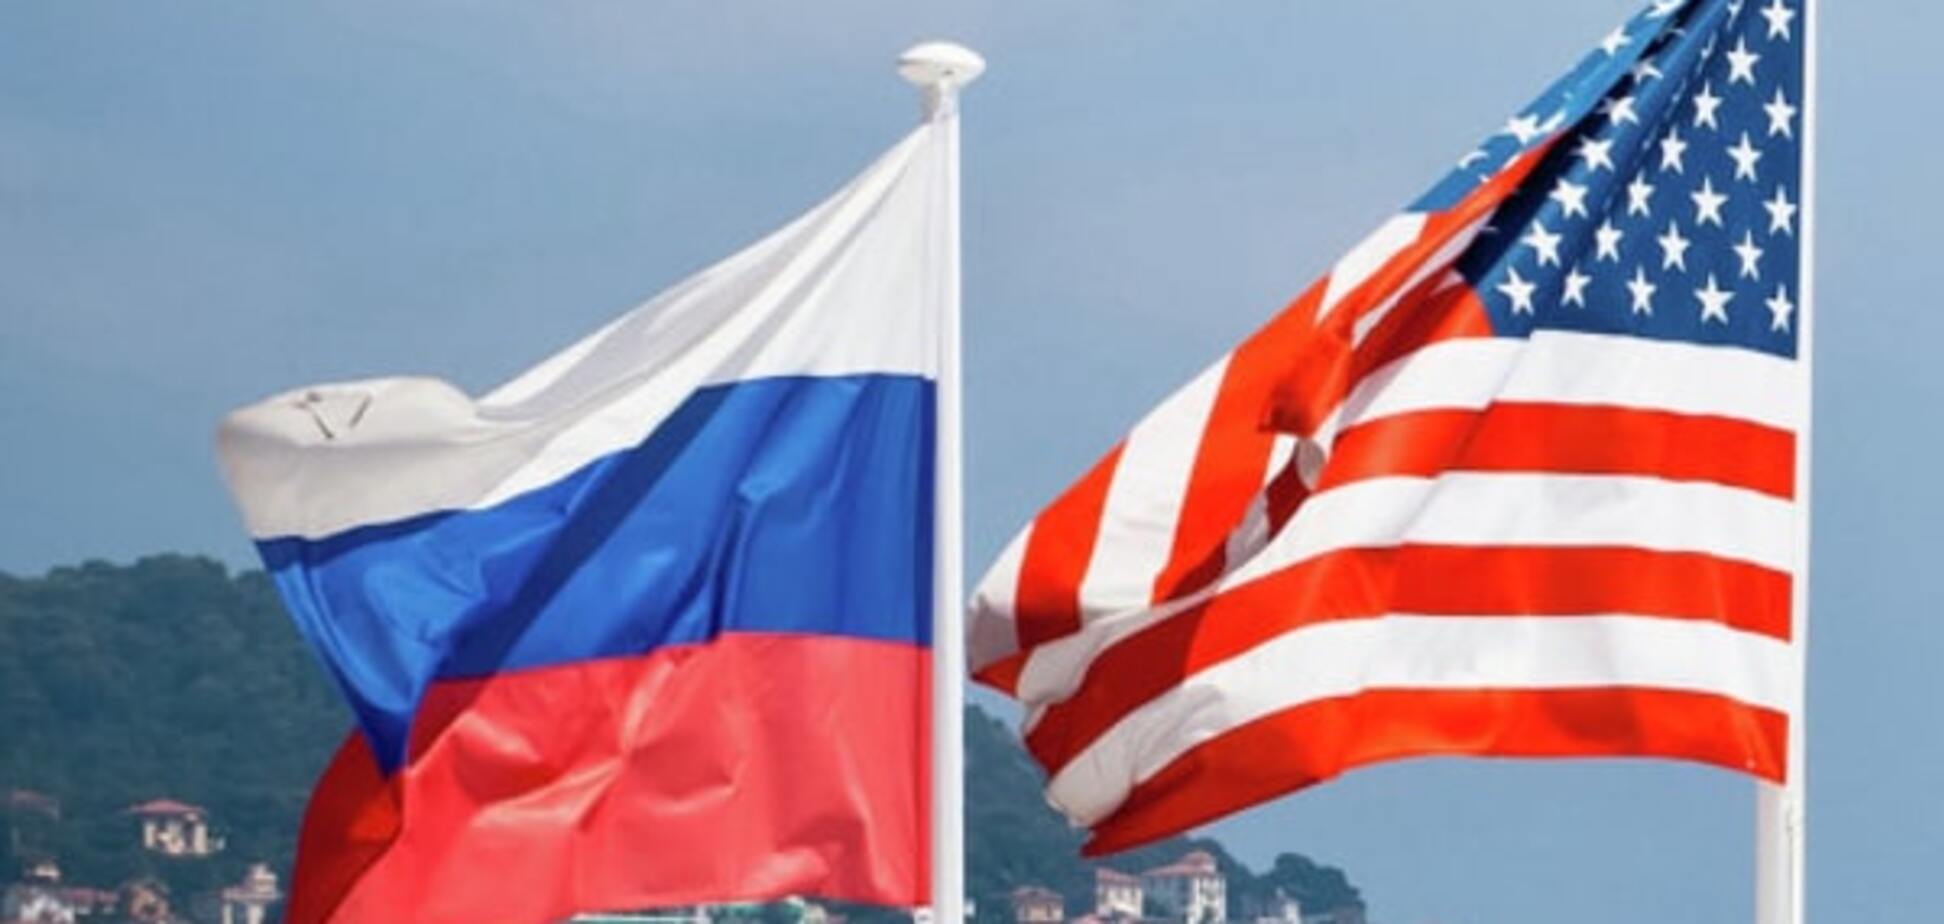 Чужих проблем не бывает: в МИД России намерены решать все вопросы вместе с США